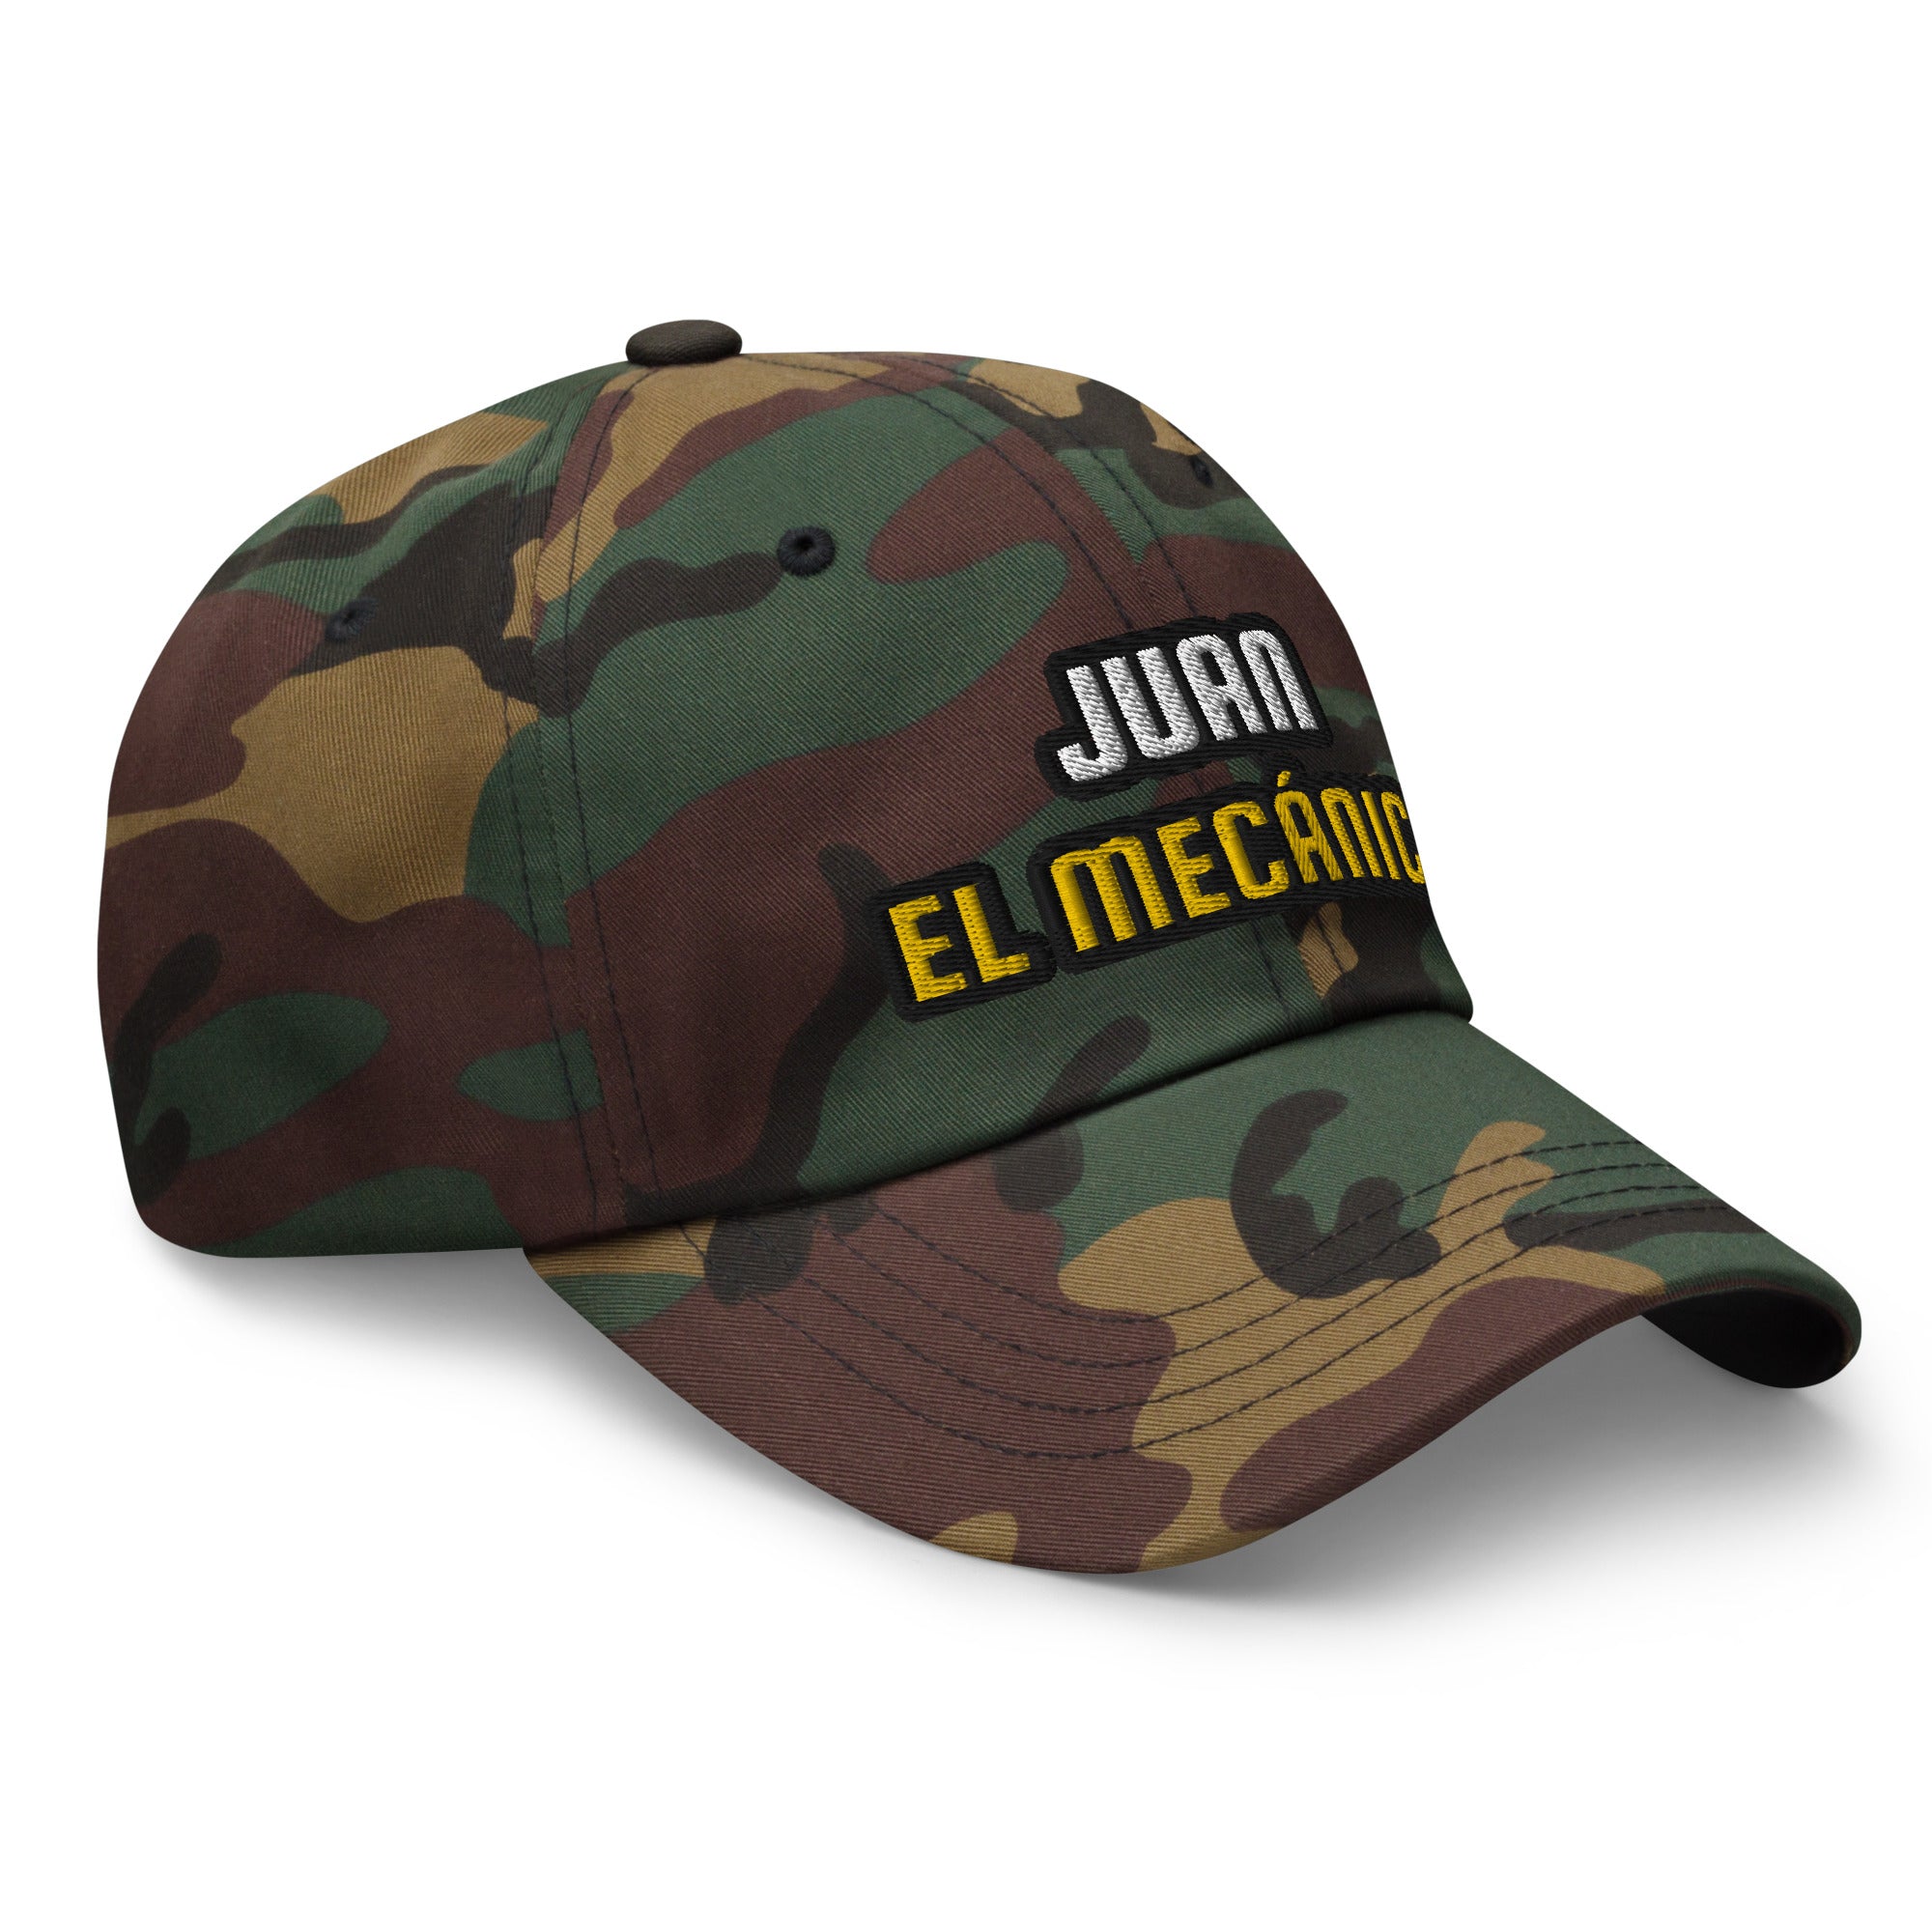 Juan el Mecánico | Gorra dad hat